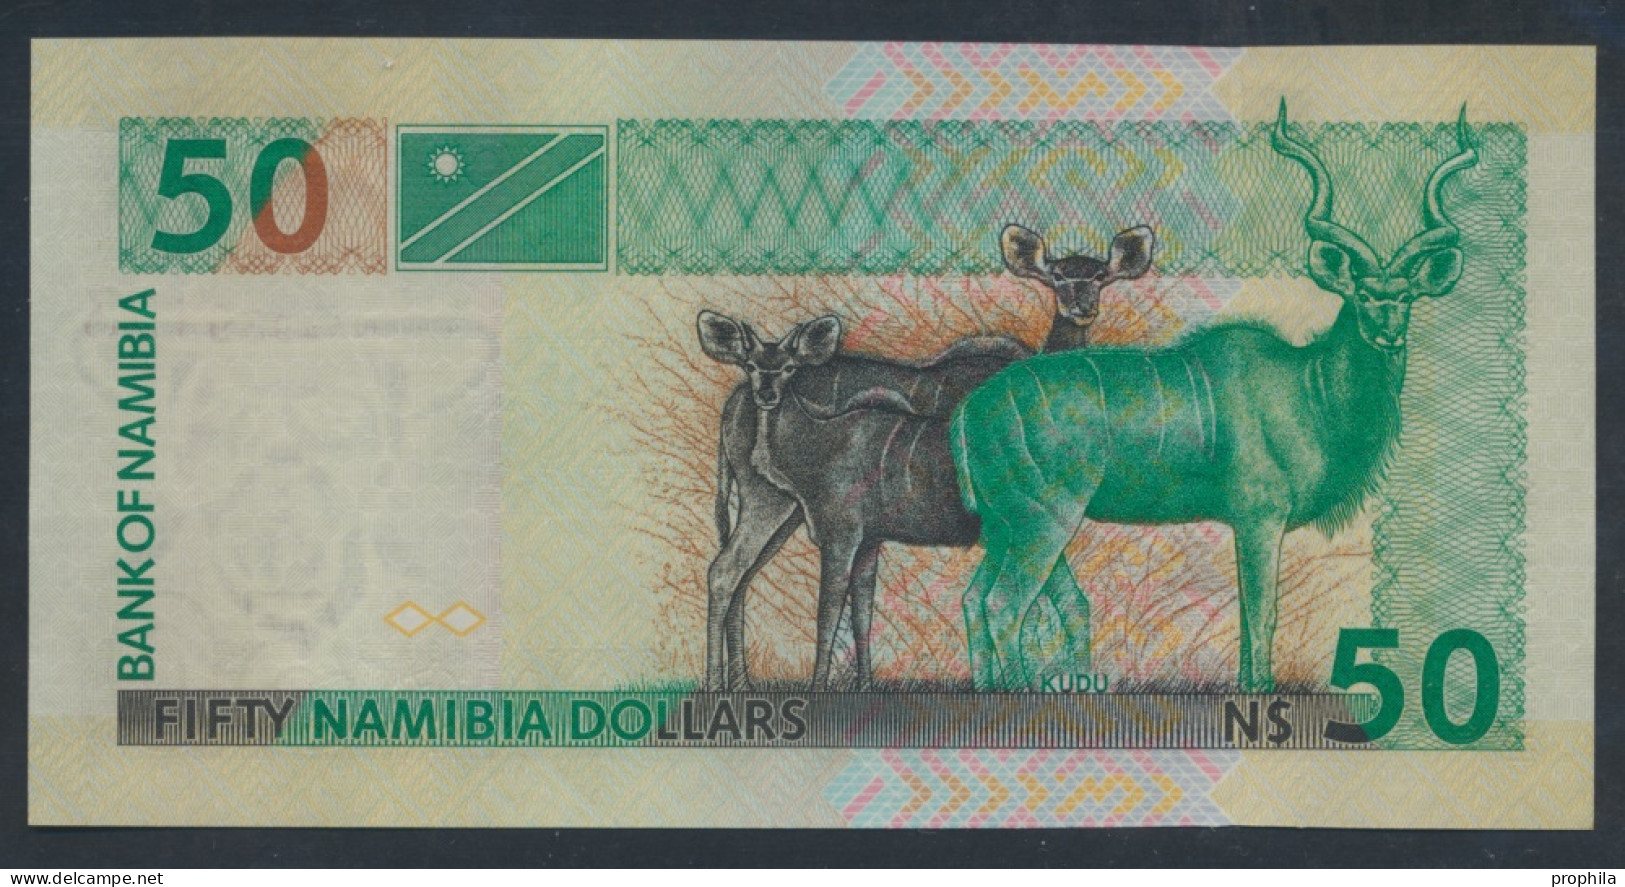 Namibia - Südwestafrika Pick-Nr: 8b Bankfrisch 2003 50 Namibia Dollars (9855723 - Namibie